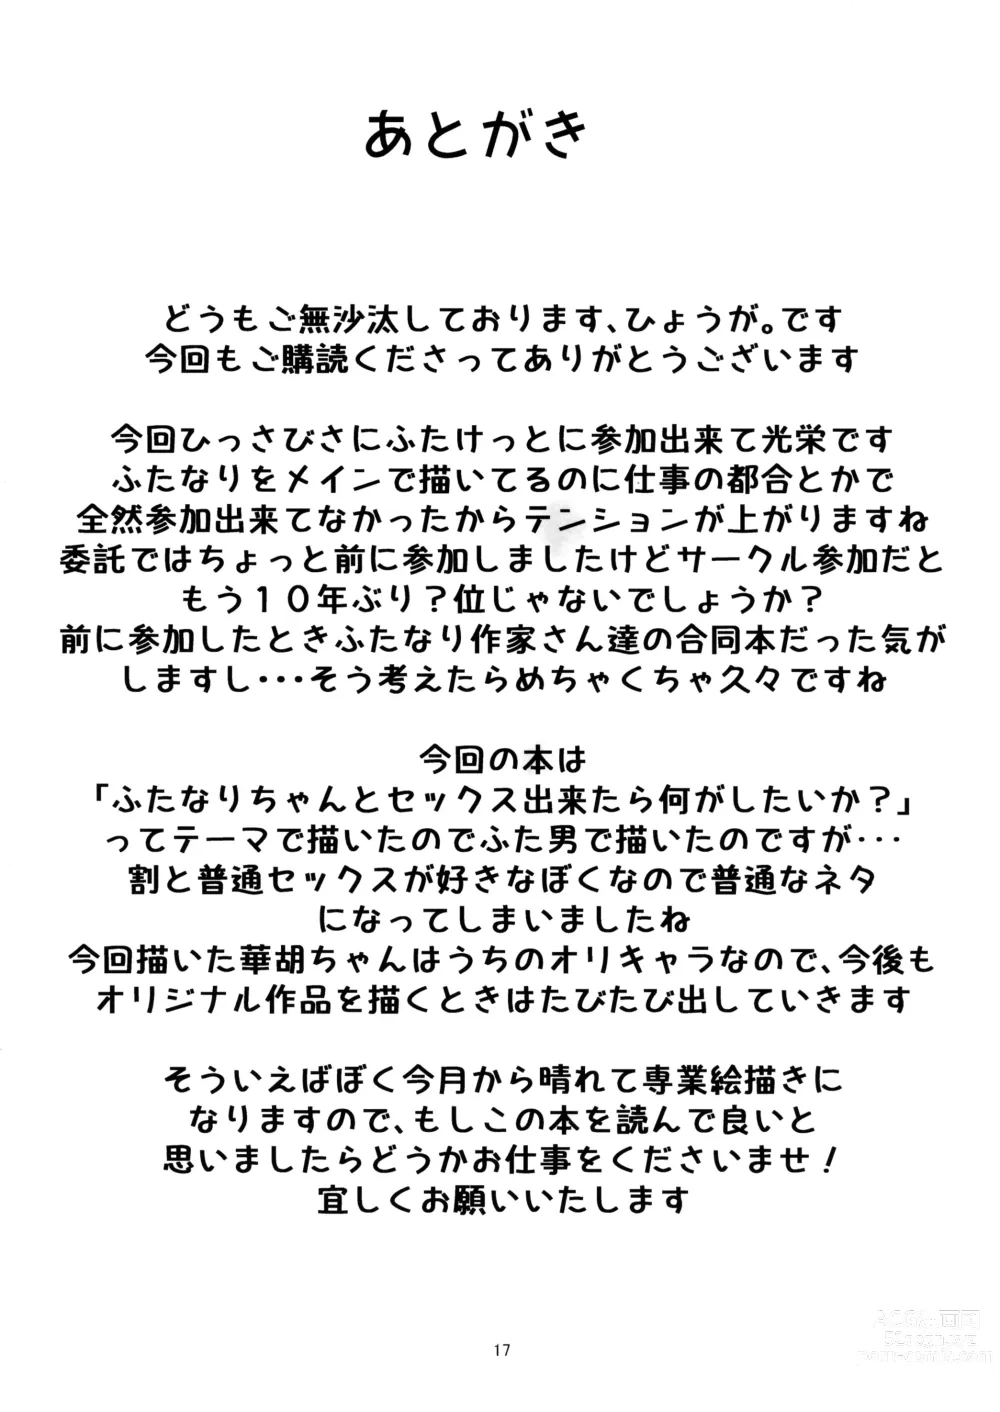 Page 17 of doujinshi Milk Uri no Shoujo